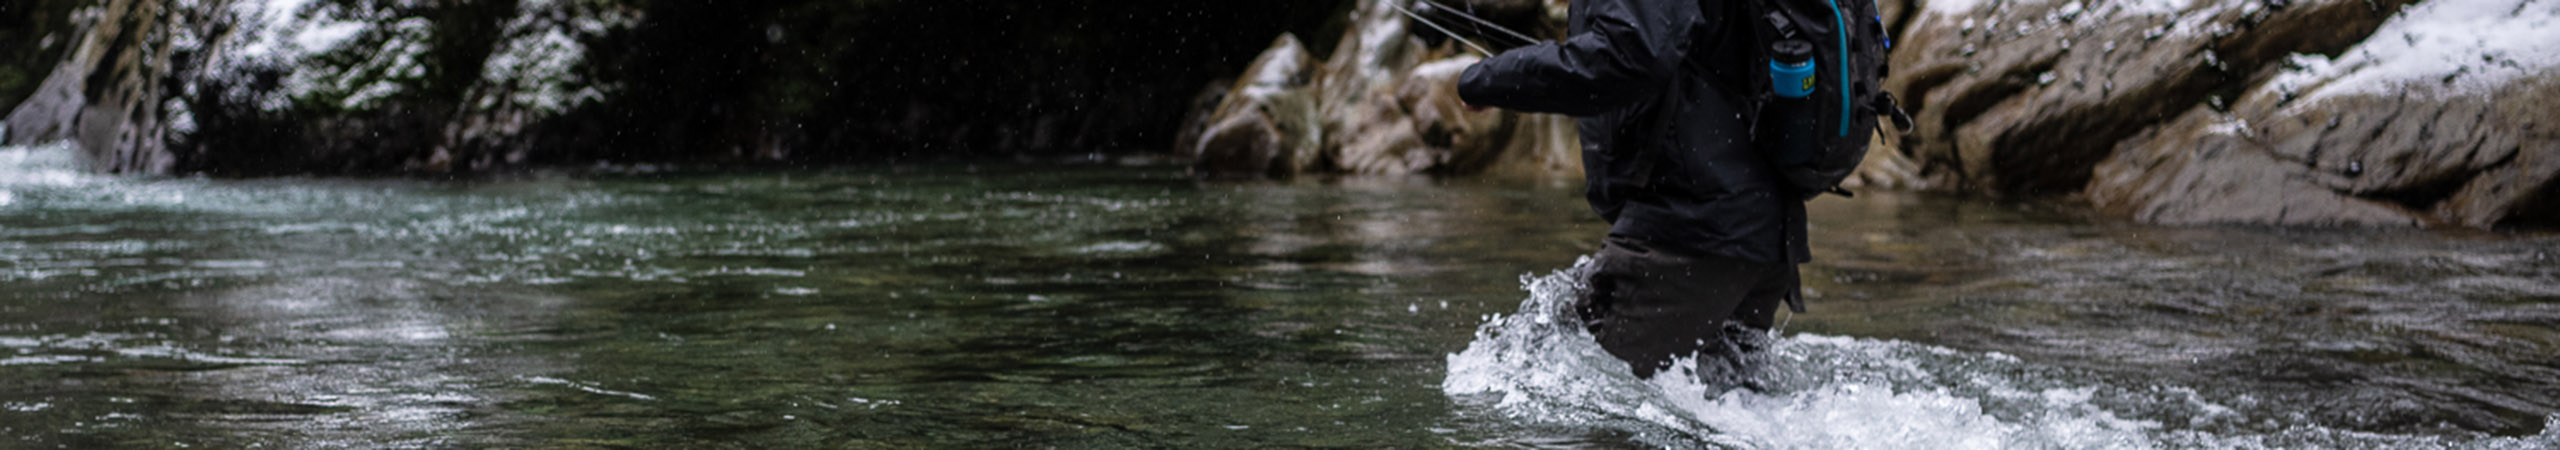 Fishing Waders and Wading Pants - DRYFT™ Fishing Waders